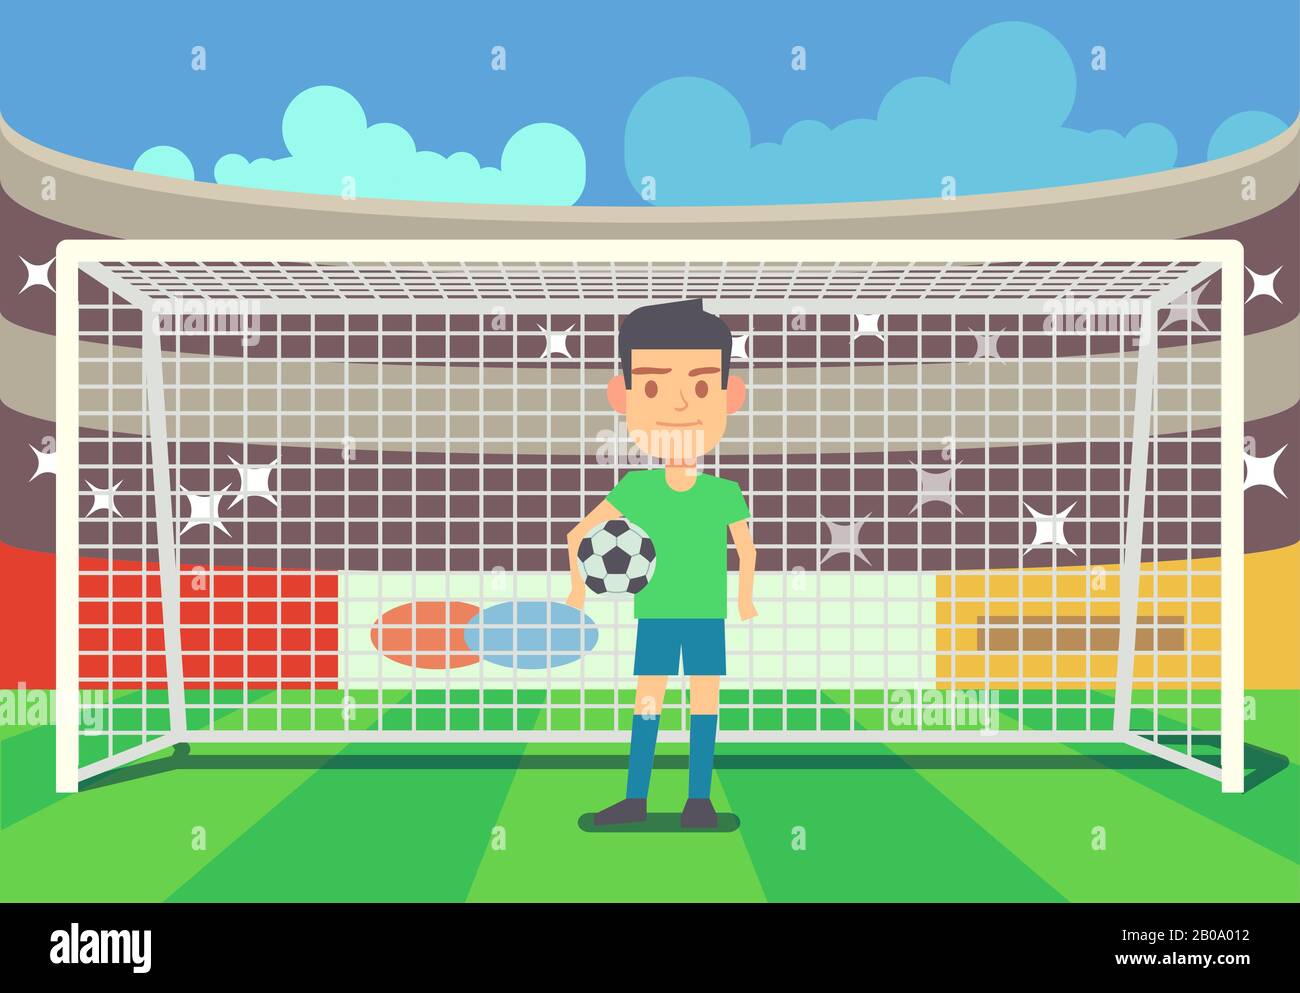 Fußball-Torwart hält Tor auf Arena-Vektor-Illustration Fußball-Keeper im Rahmen Stock Vektor